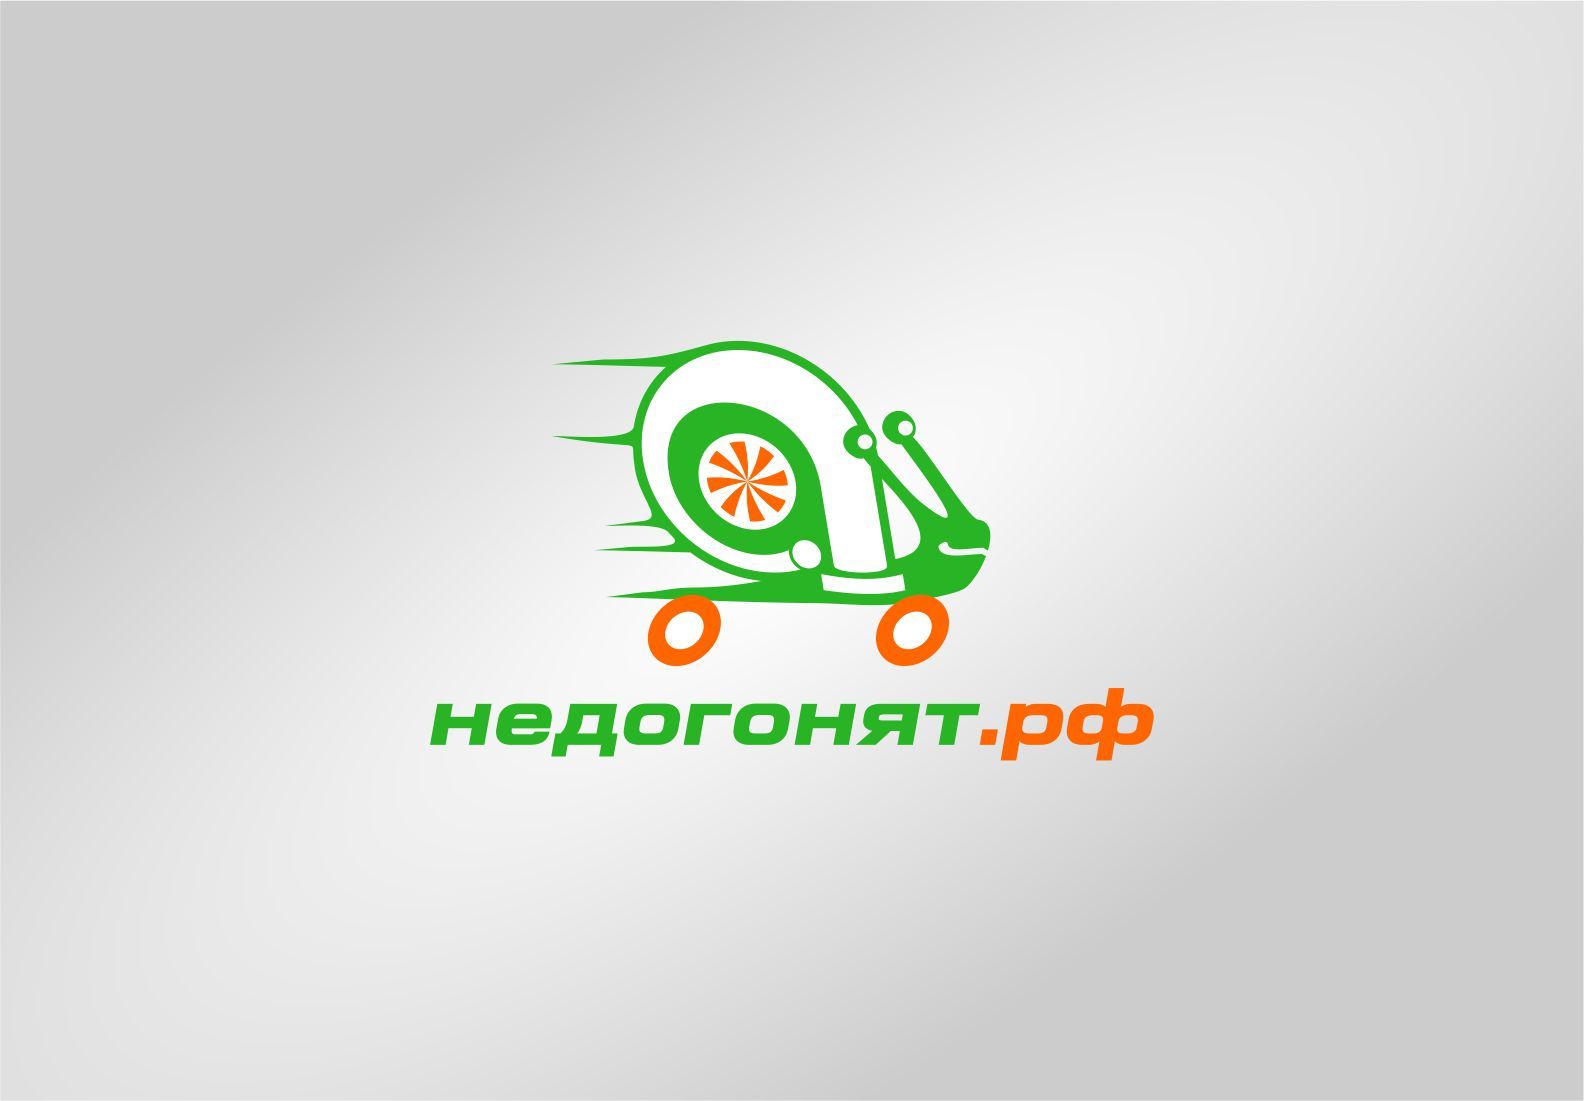 недогонят.рф / nedogonyat.ru - дизайнер graphin4ik